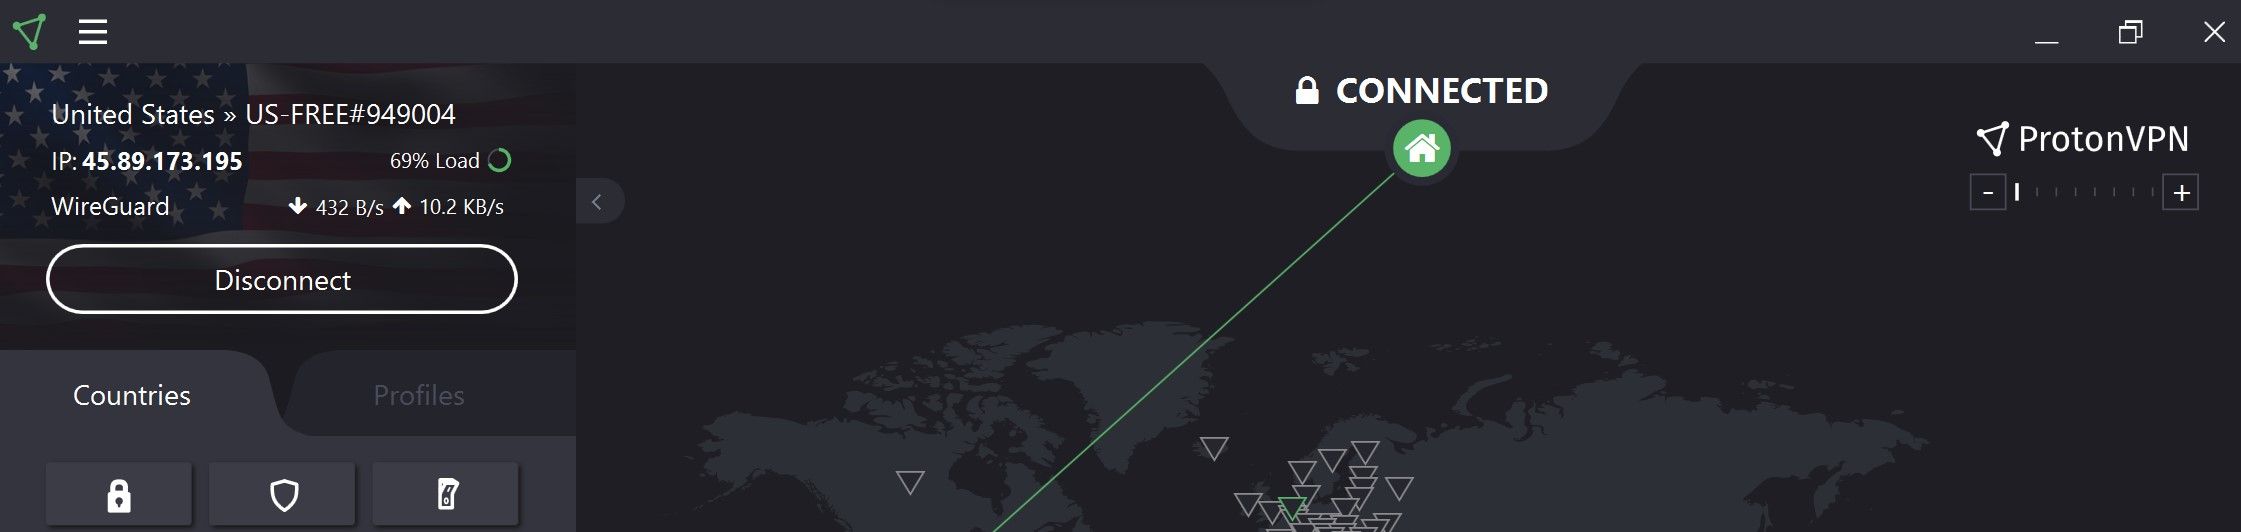 Proton VPN được kết nối với máy chủ Hoa Kỳ